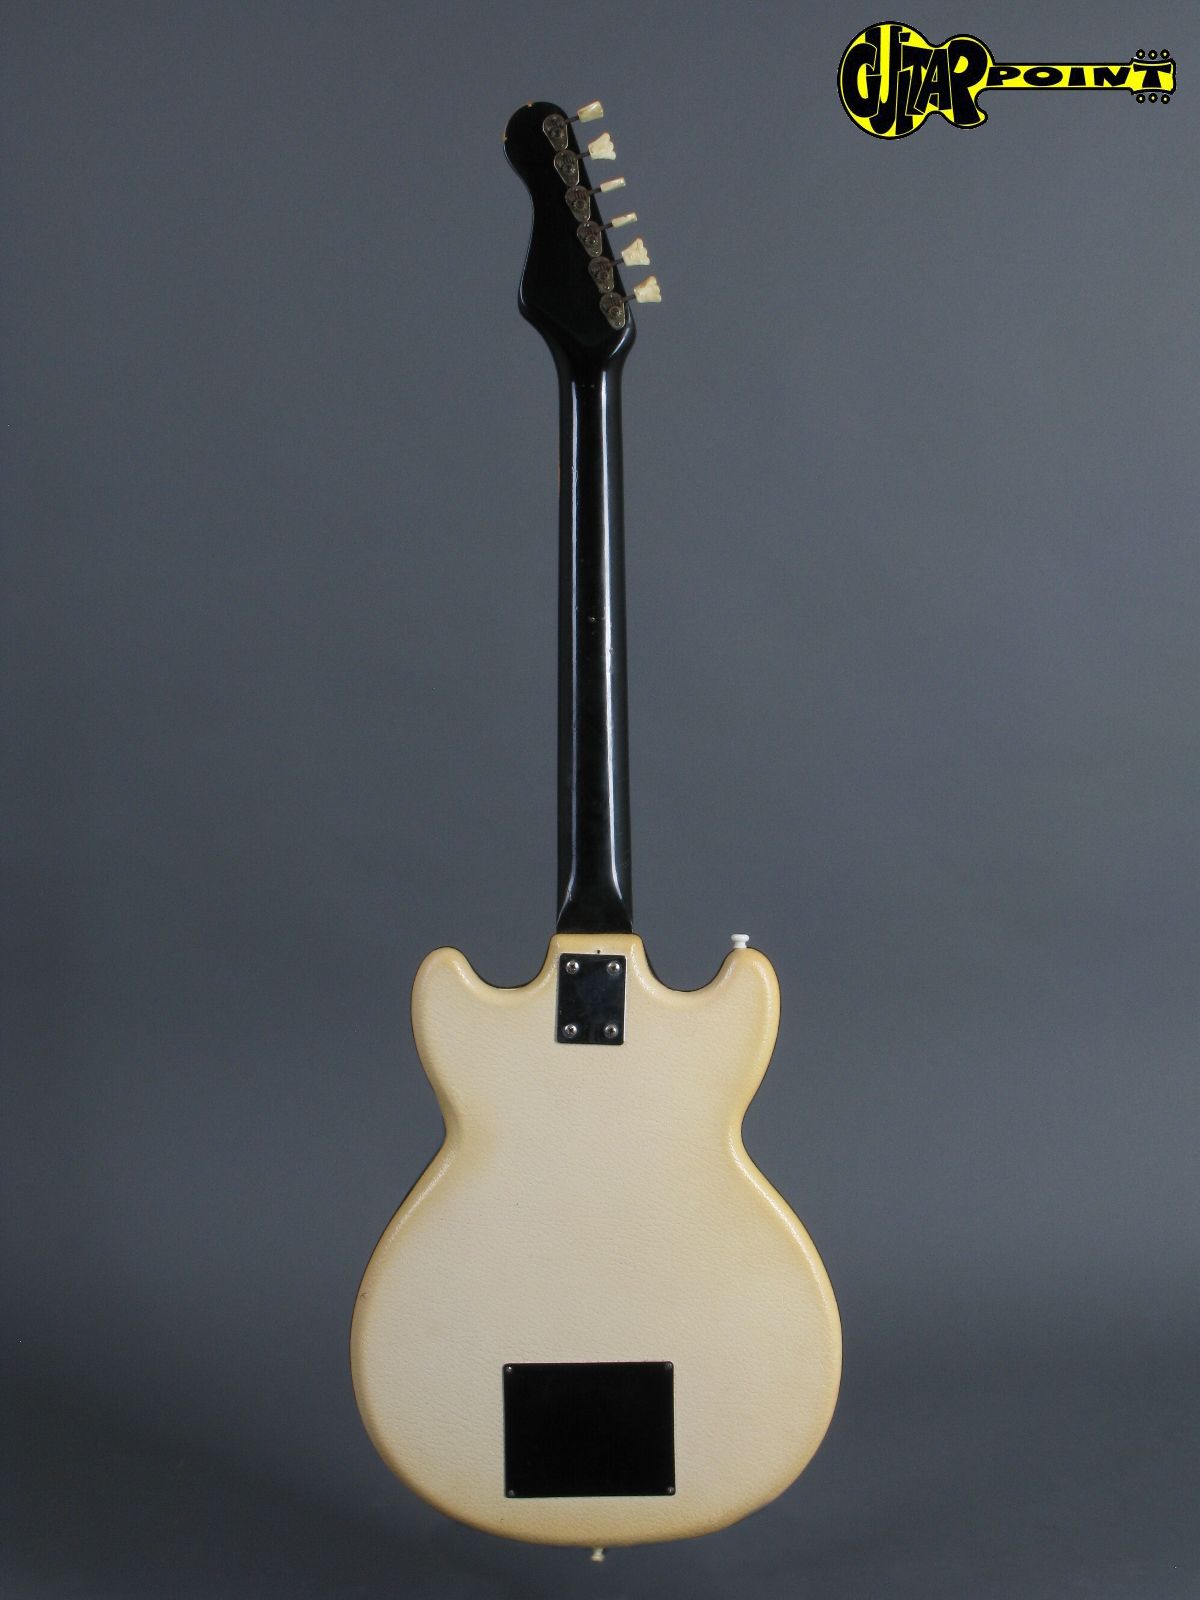 Höfner / Hofner 164 (i) 1964 White Vinyl Guitar For Sale GuitarPoint
